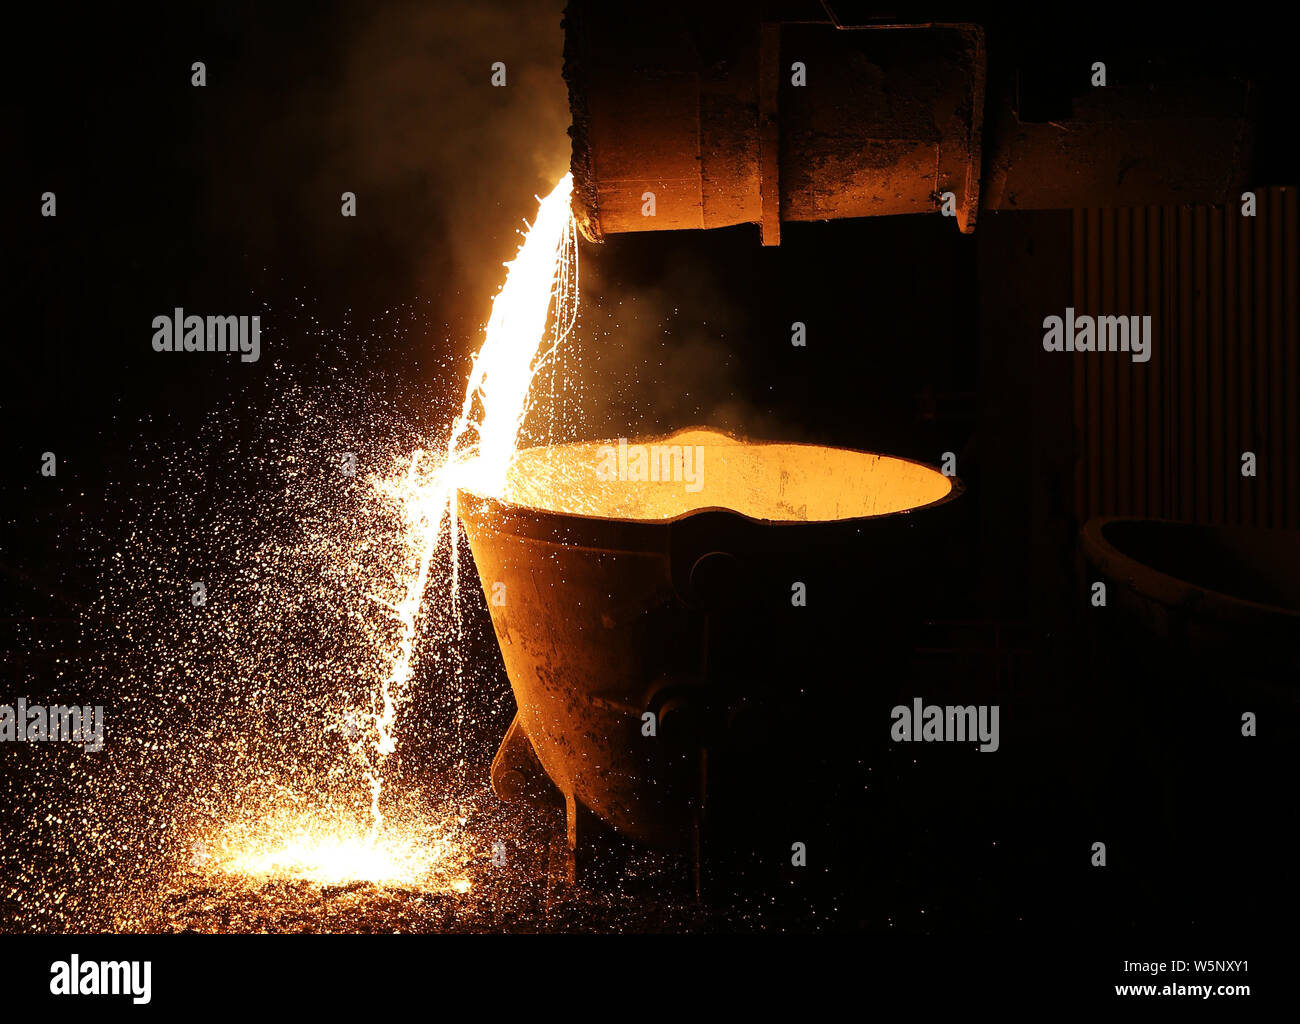 Un lavoratore cinese elabora le parti in acciaio presso lo stabilimento di Nanjing Ferro e acciaio Co., Ltd. in Nanjing city, est cinese della provincia di Jiangsu, 10 maggio 2019. Foto Stock